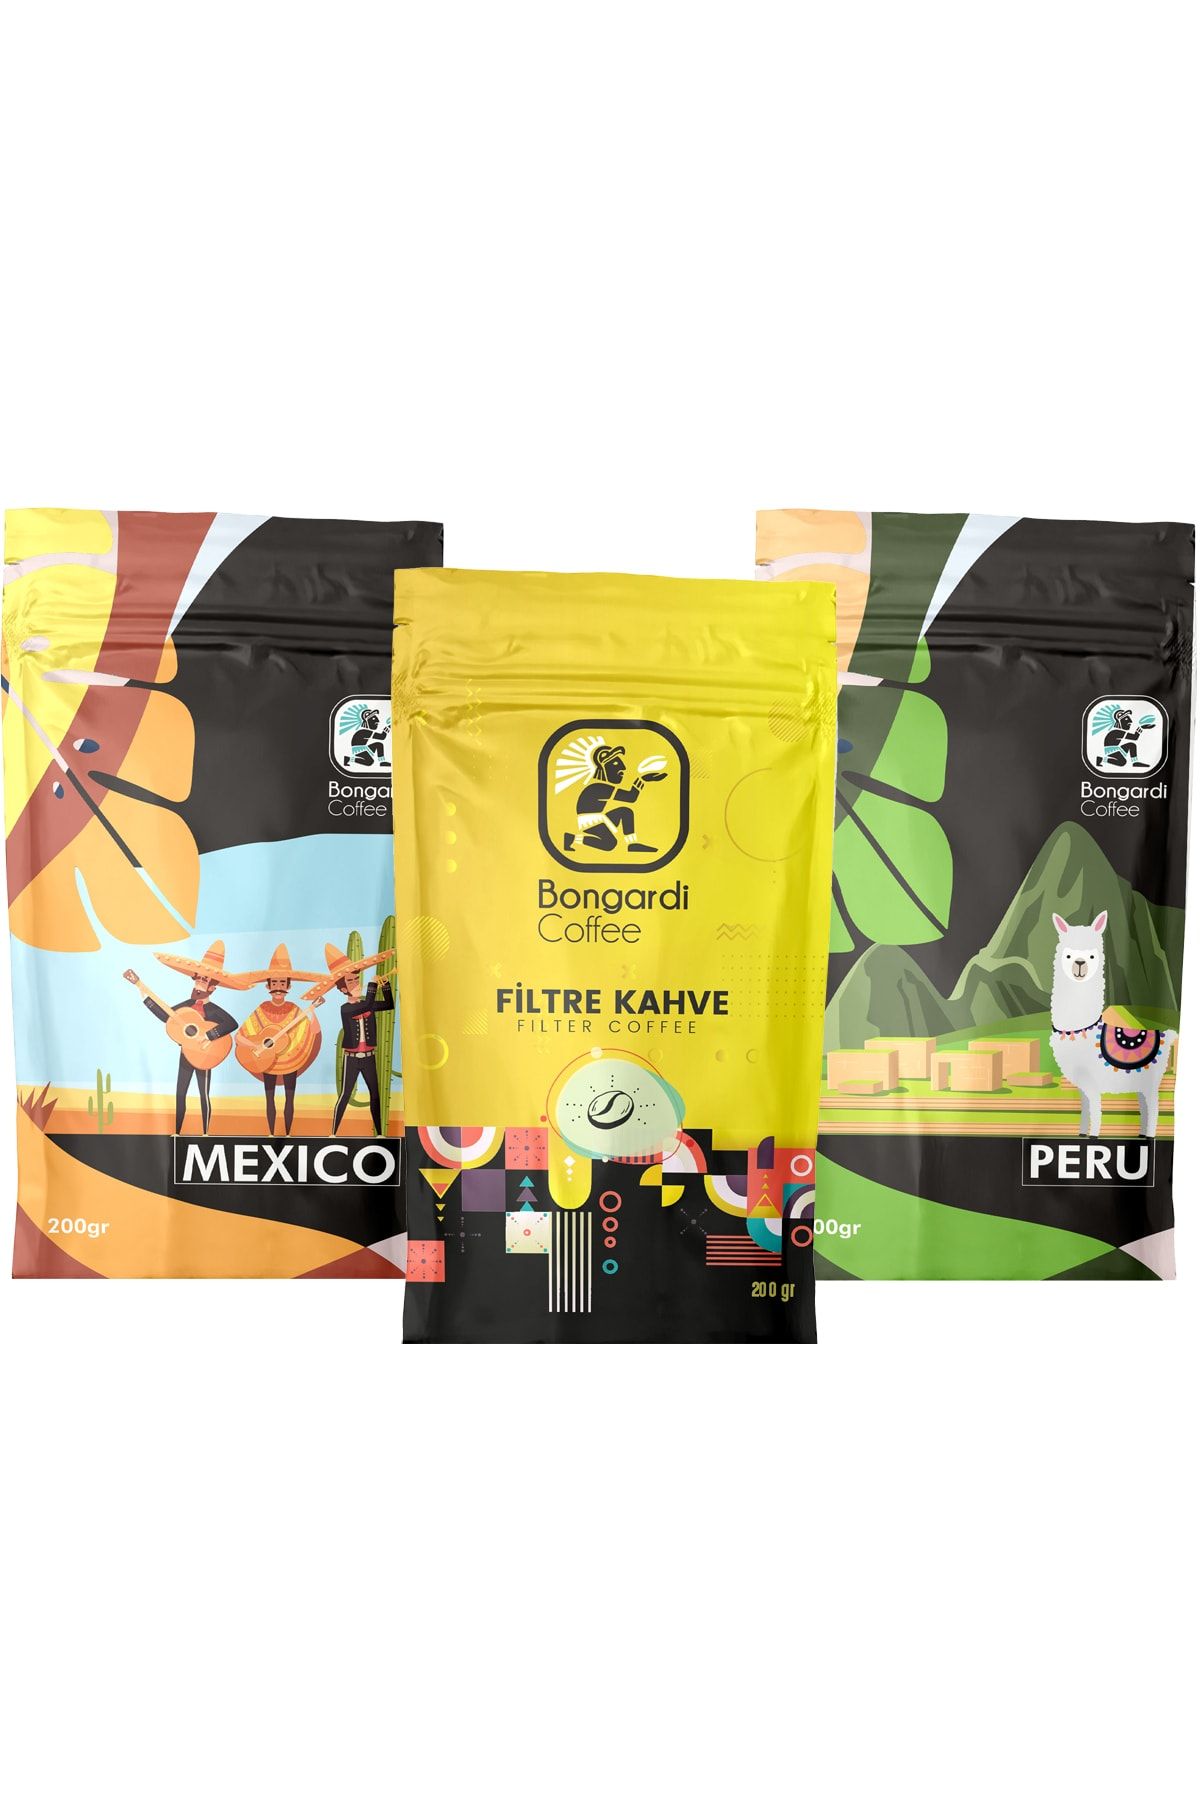 Bongardi Coffee Yöresel Filtre Kahve Seti 3x200 gram Meksika Peru Intense Blend